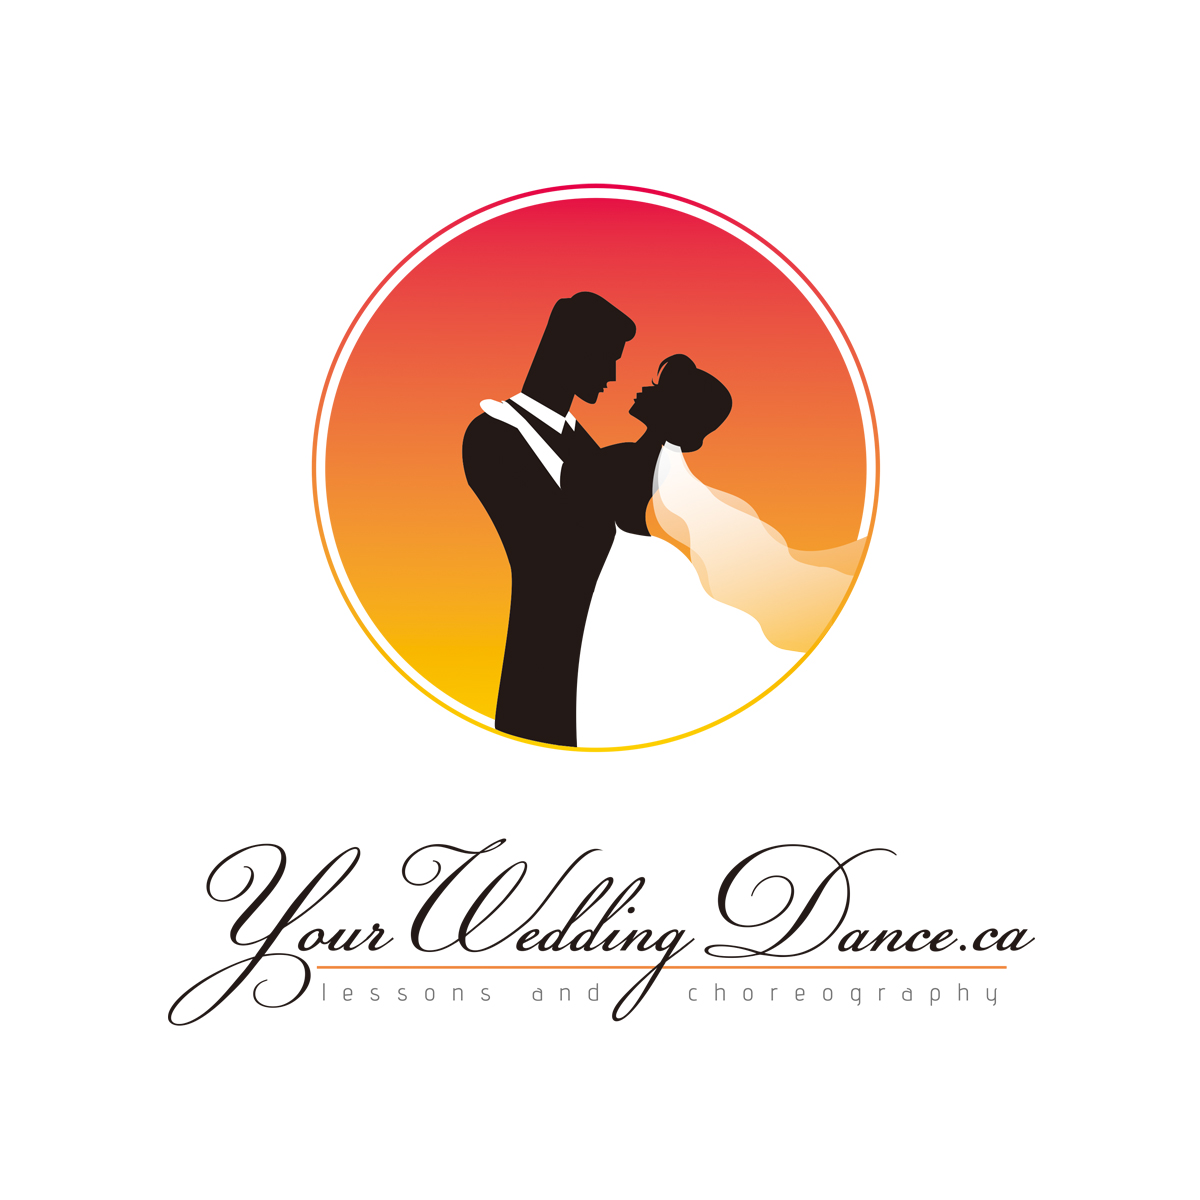 yourweddingdance.ca - wedding first dance choreography and wedding first da